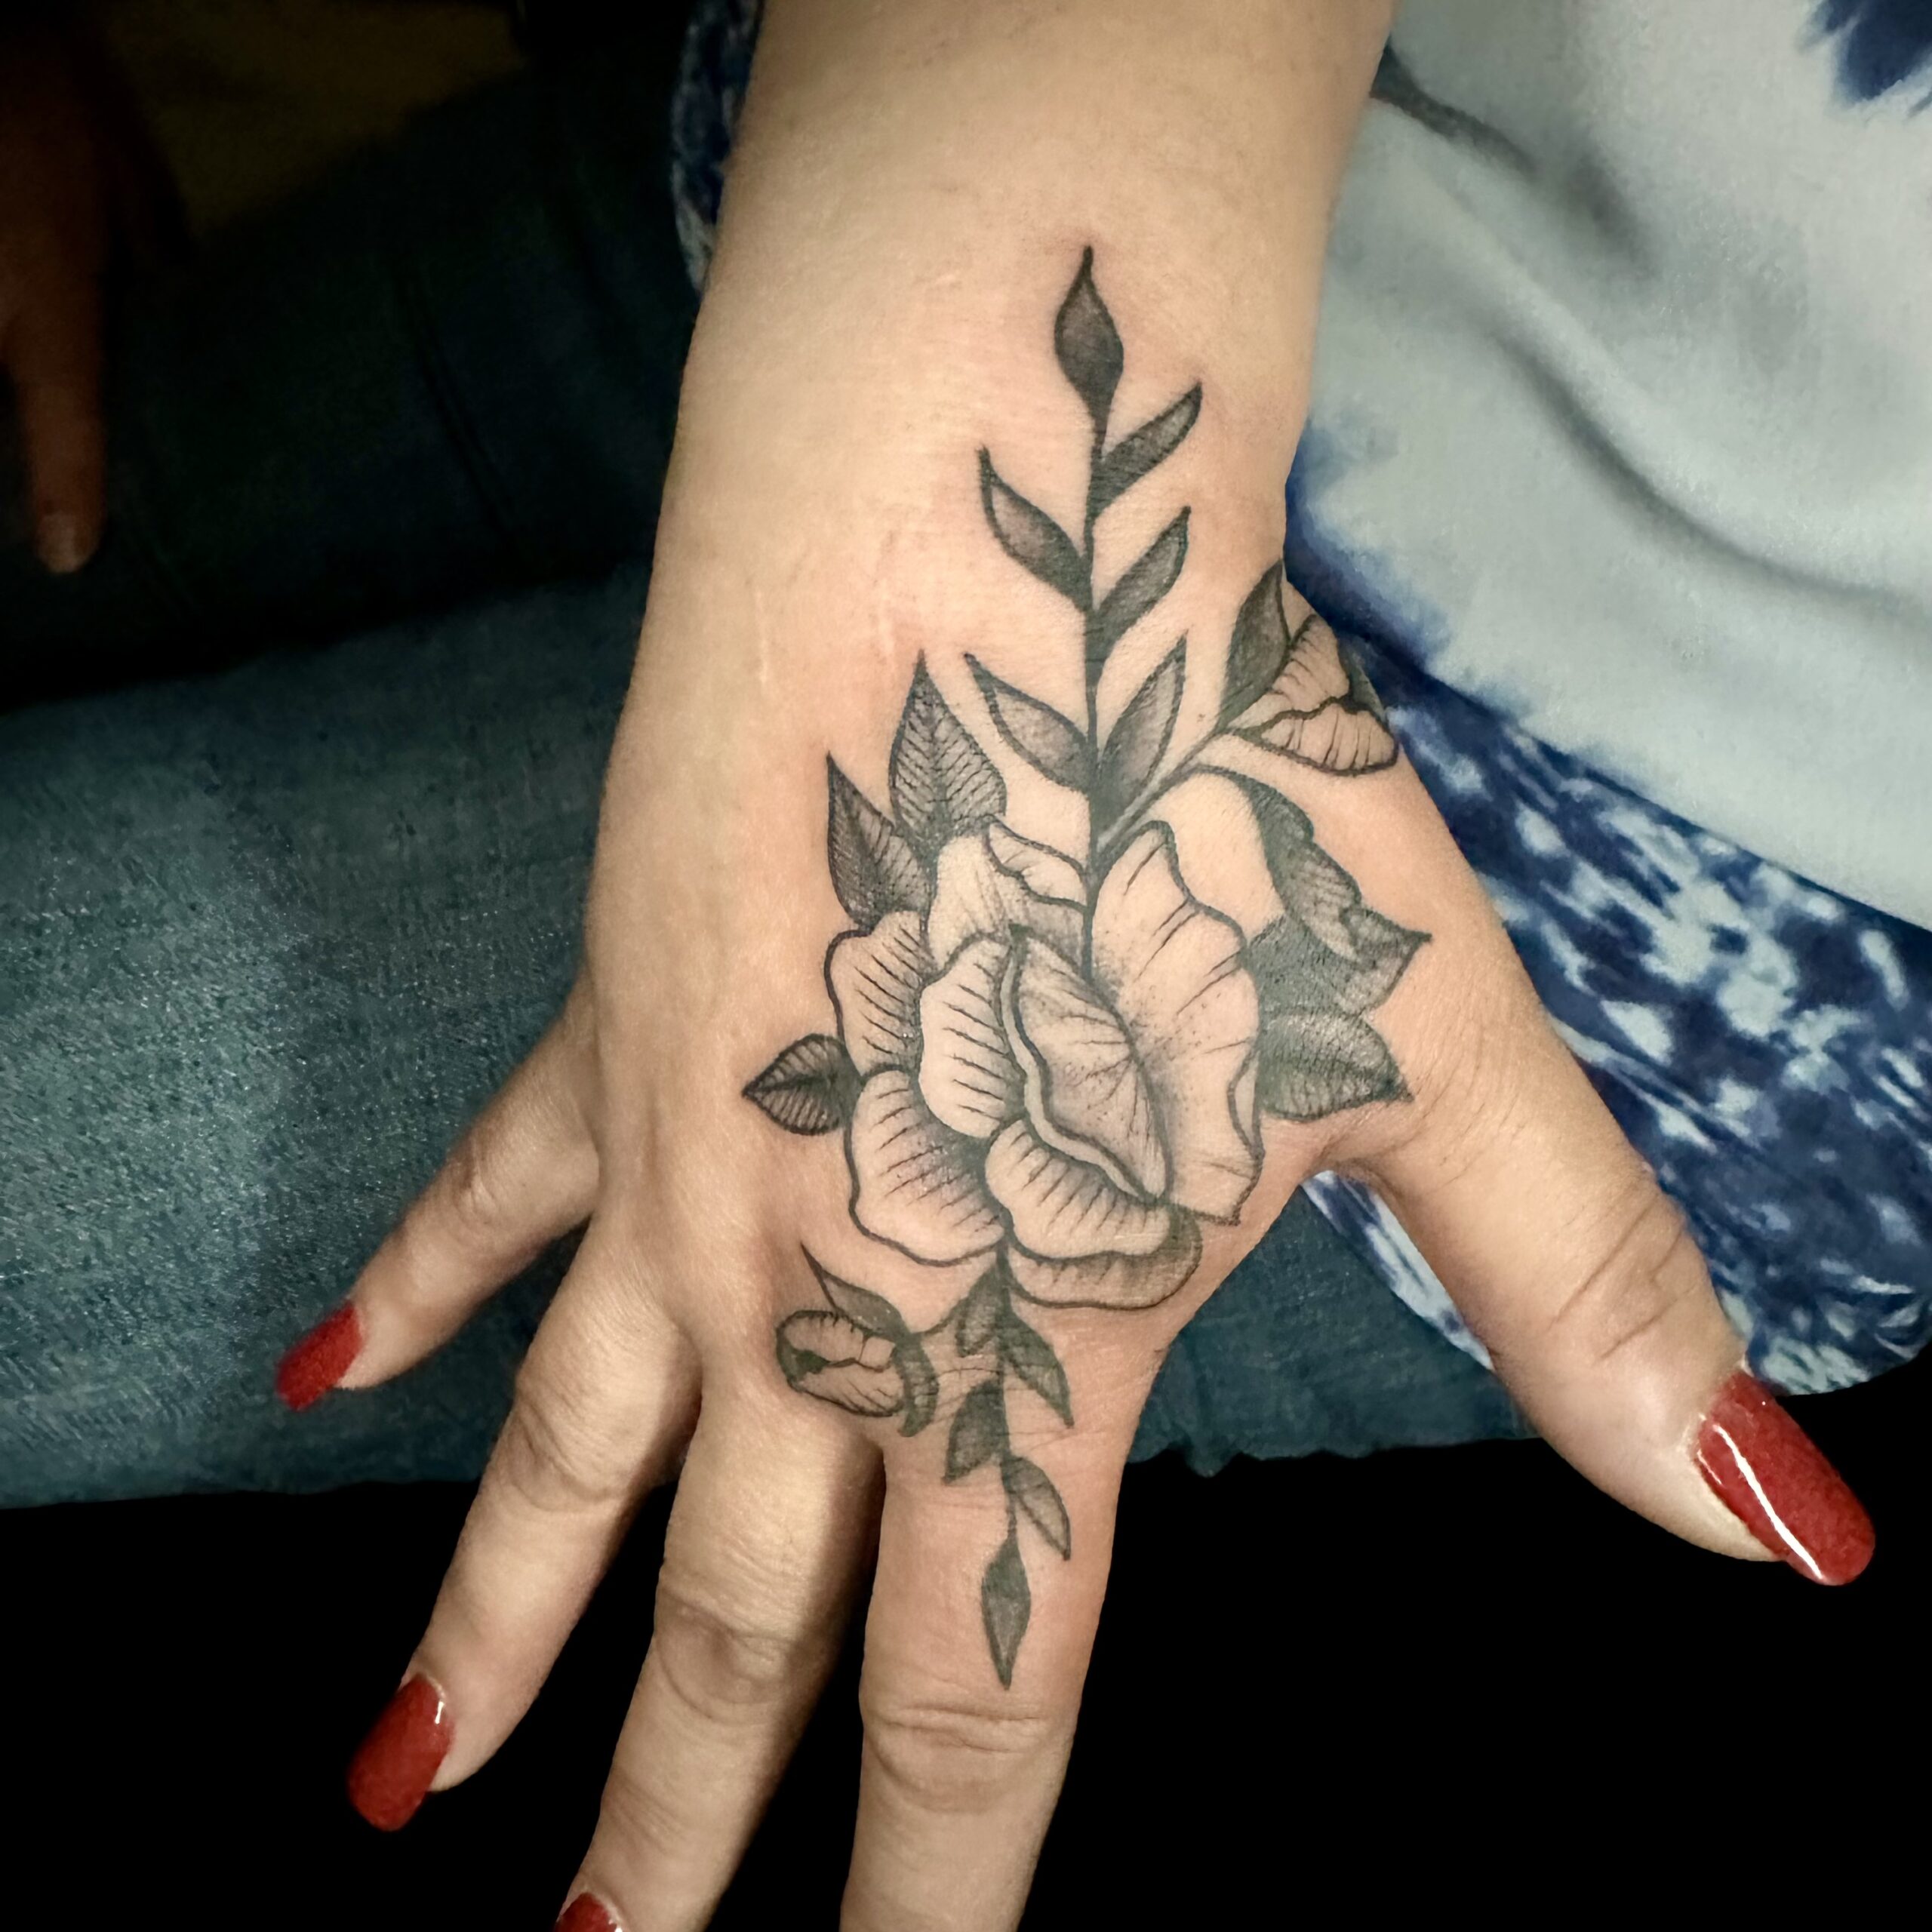 Hand tattoo of a flower